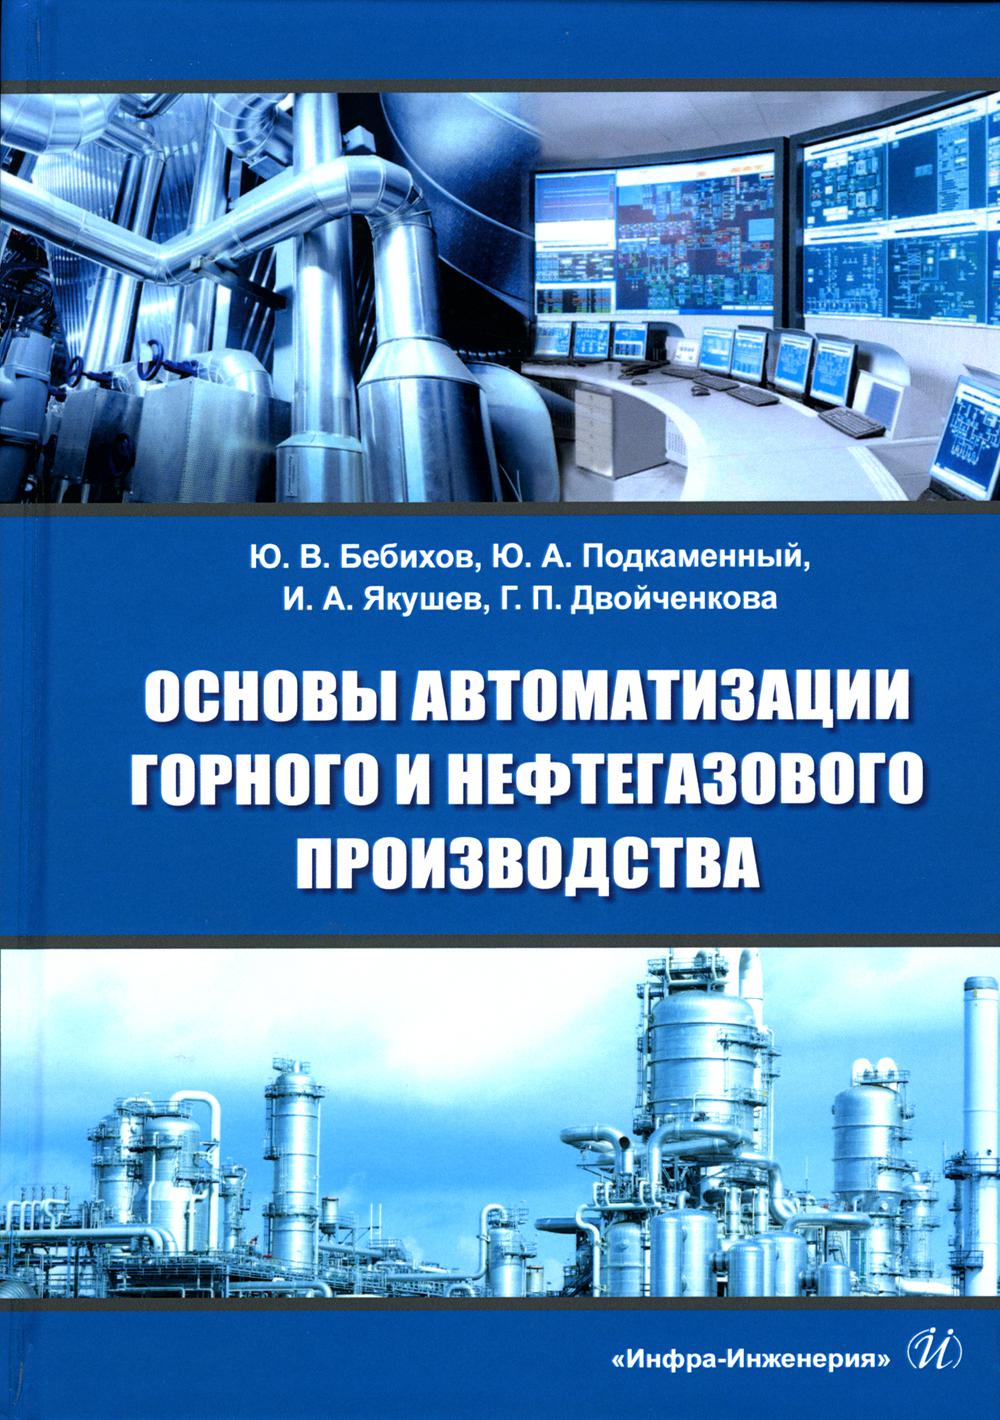 фото Книга основы автоматизации горного и нефтегазового производства инфра-инженерия